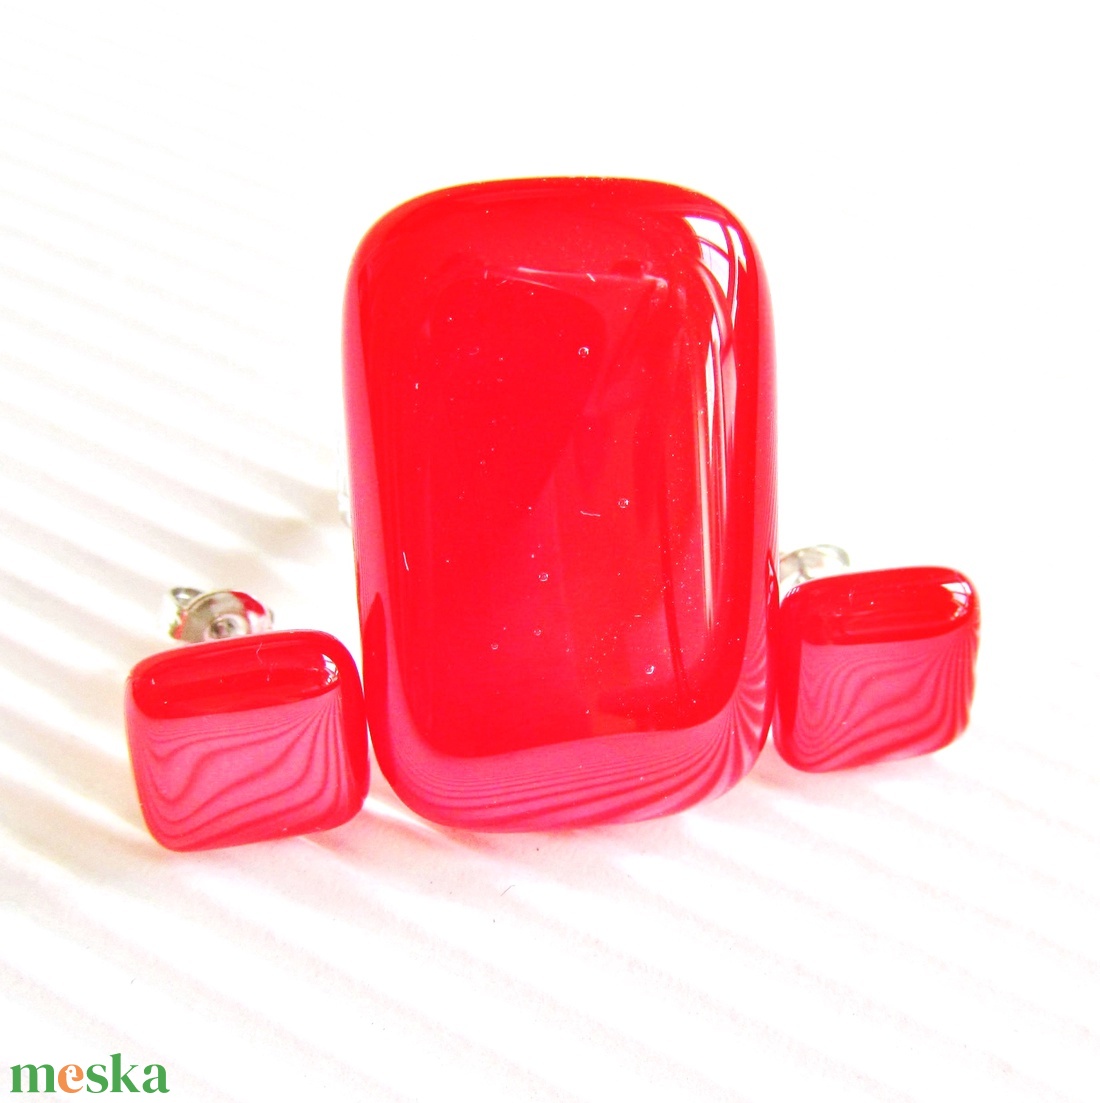 Utolsó szett! - NEMESACÉL Ferrari piros elegancia üveg gyűrű és fülbevaló ORVOSI FÉM bedugón, üvegékszer szett  - ékszer - ékszerszett - Meska.hu